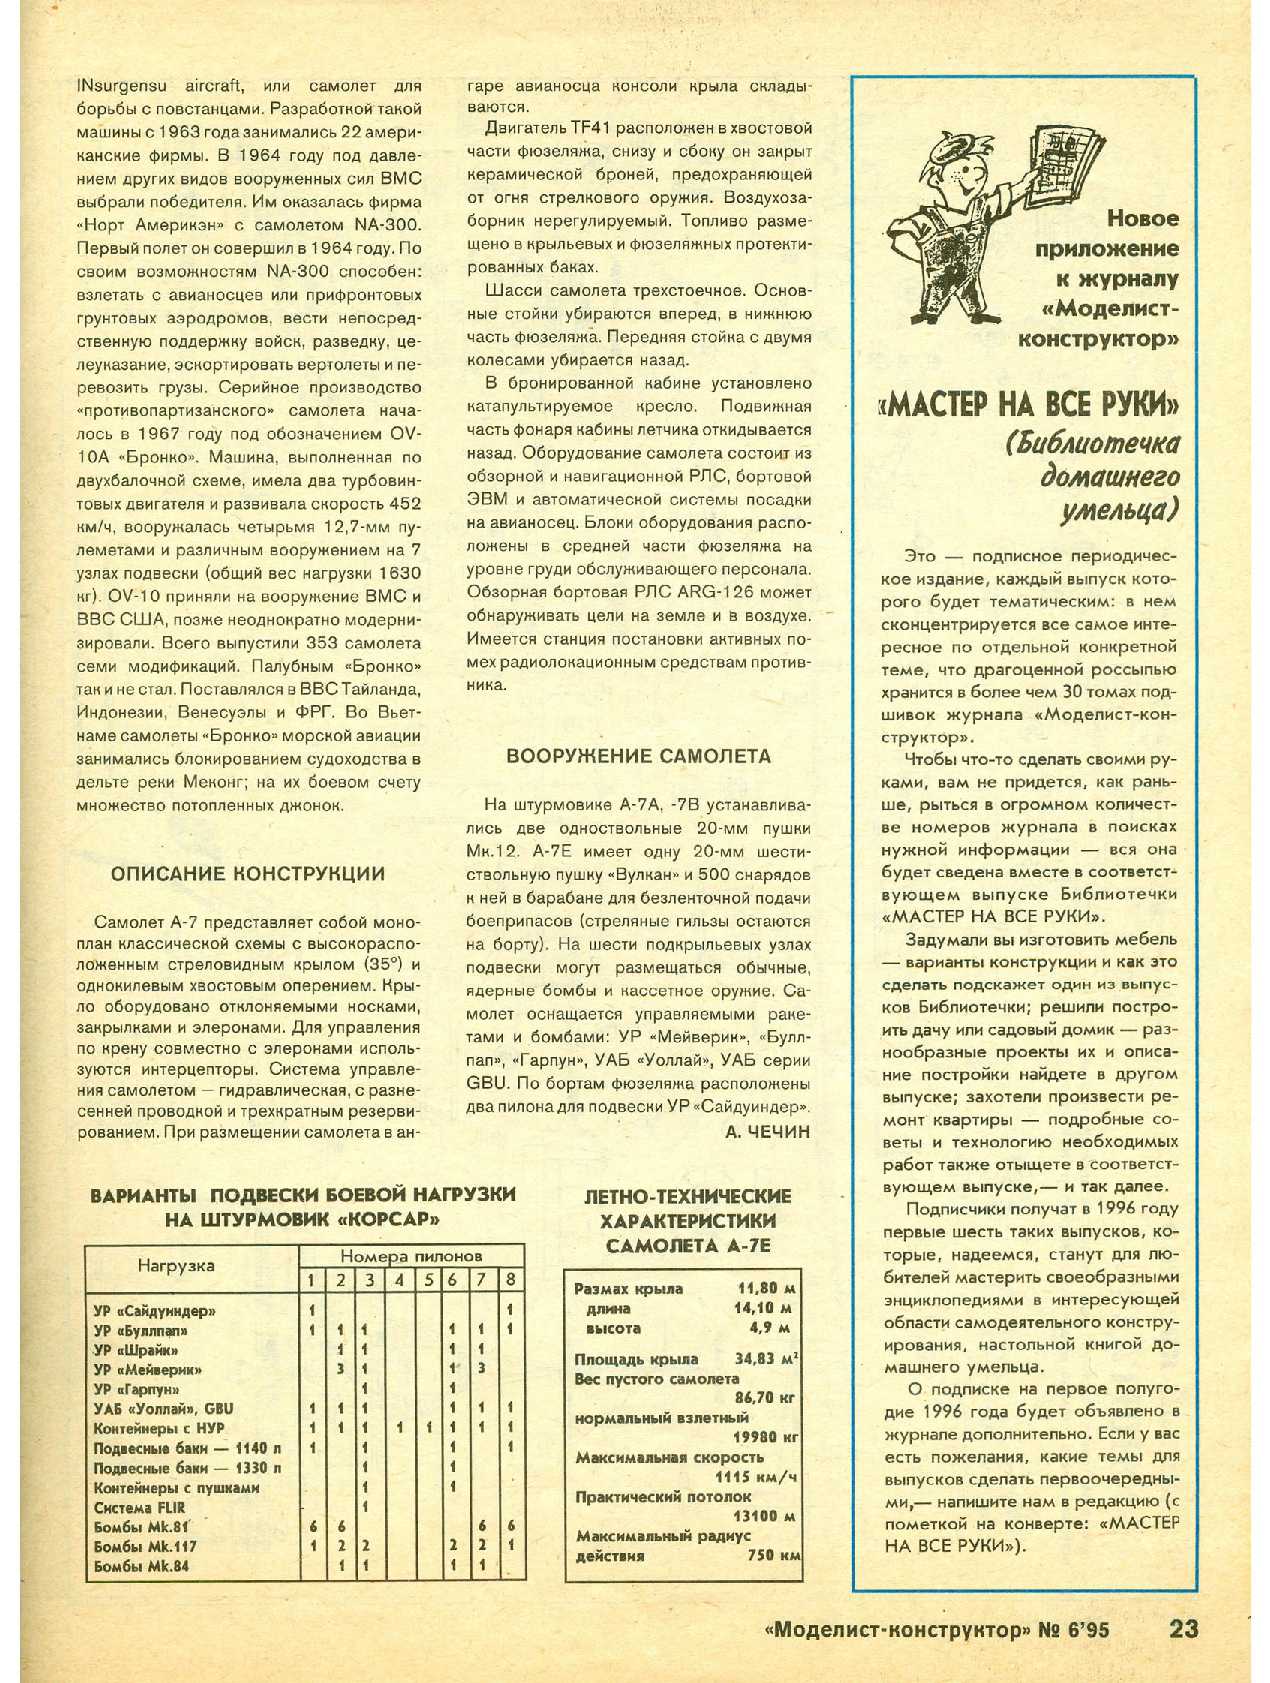 МК 6, 1995, 23 c.